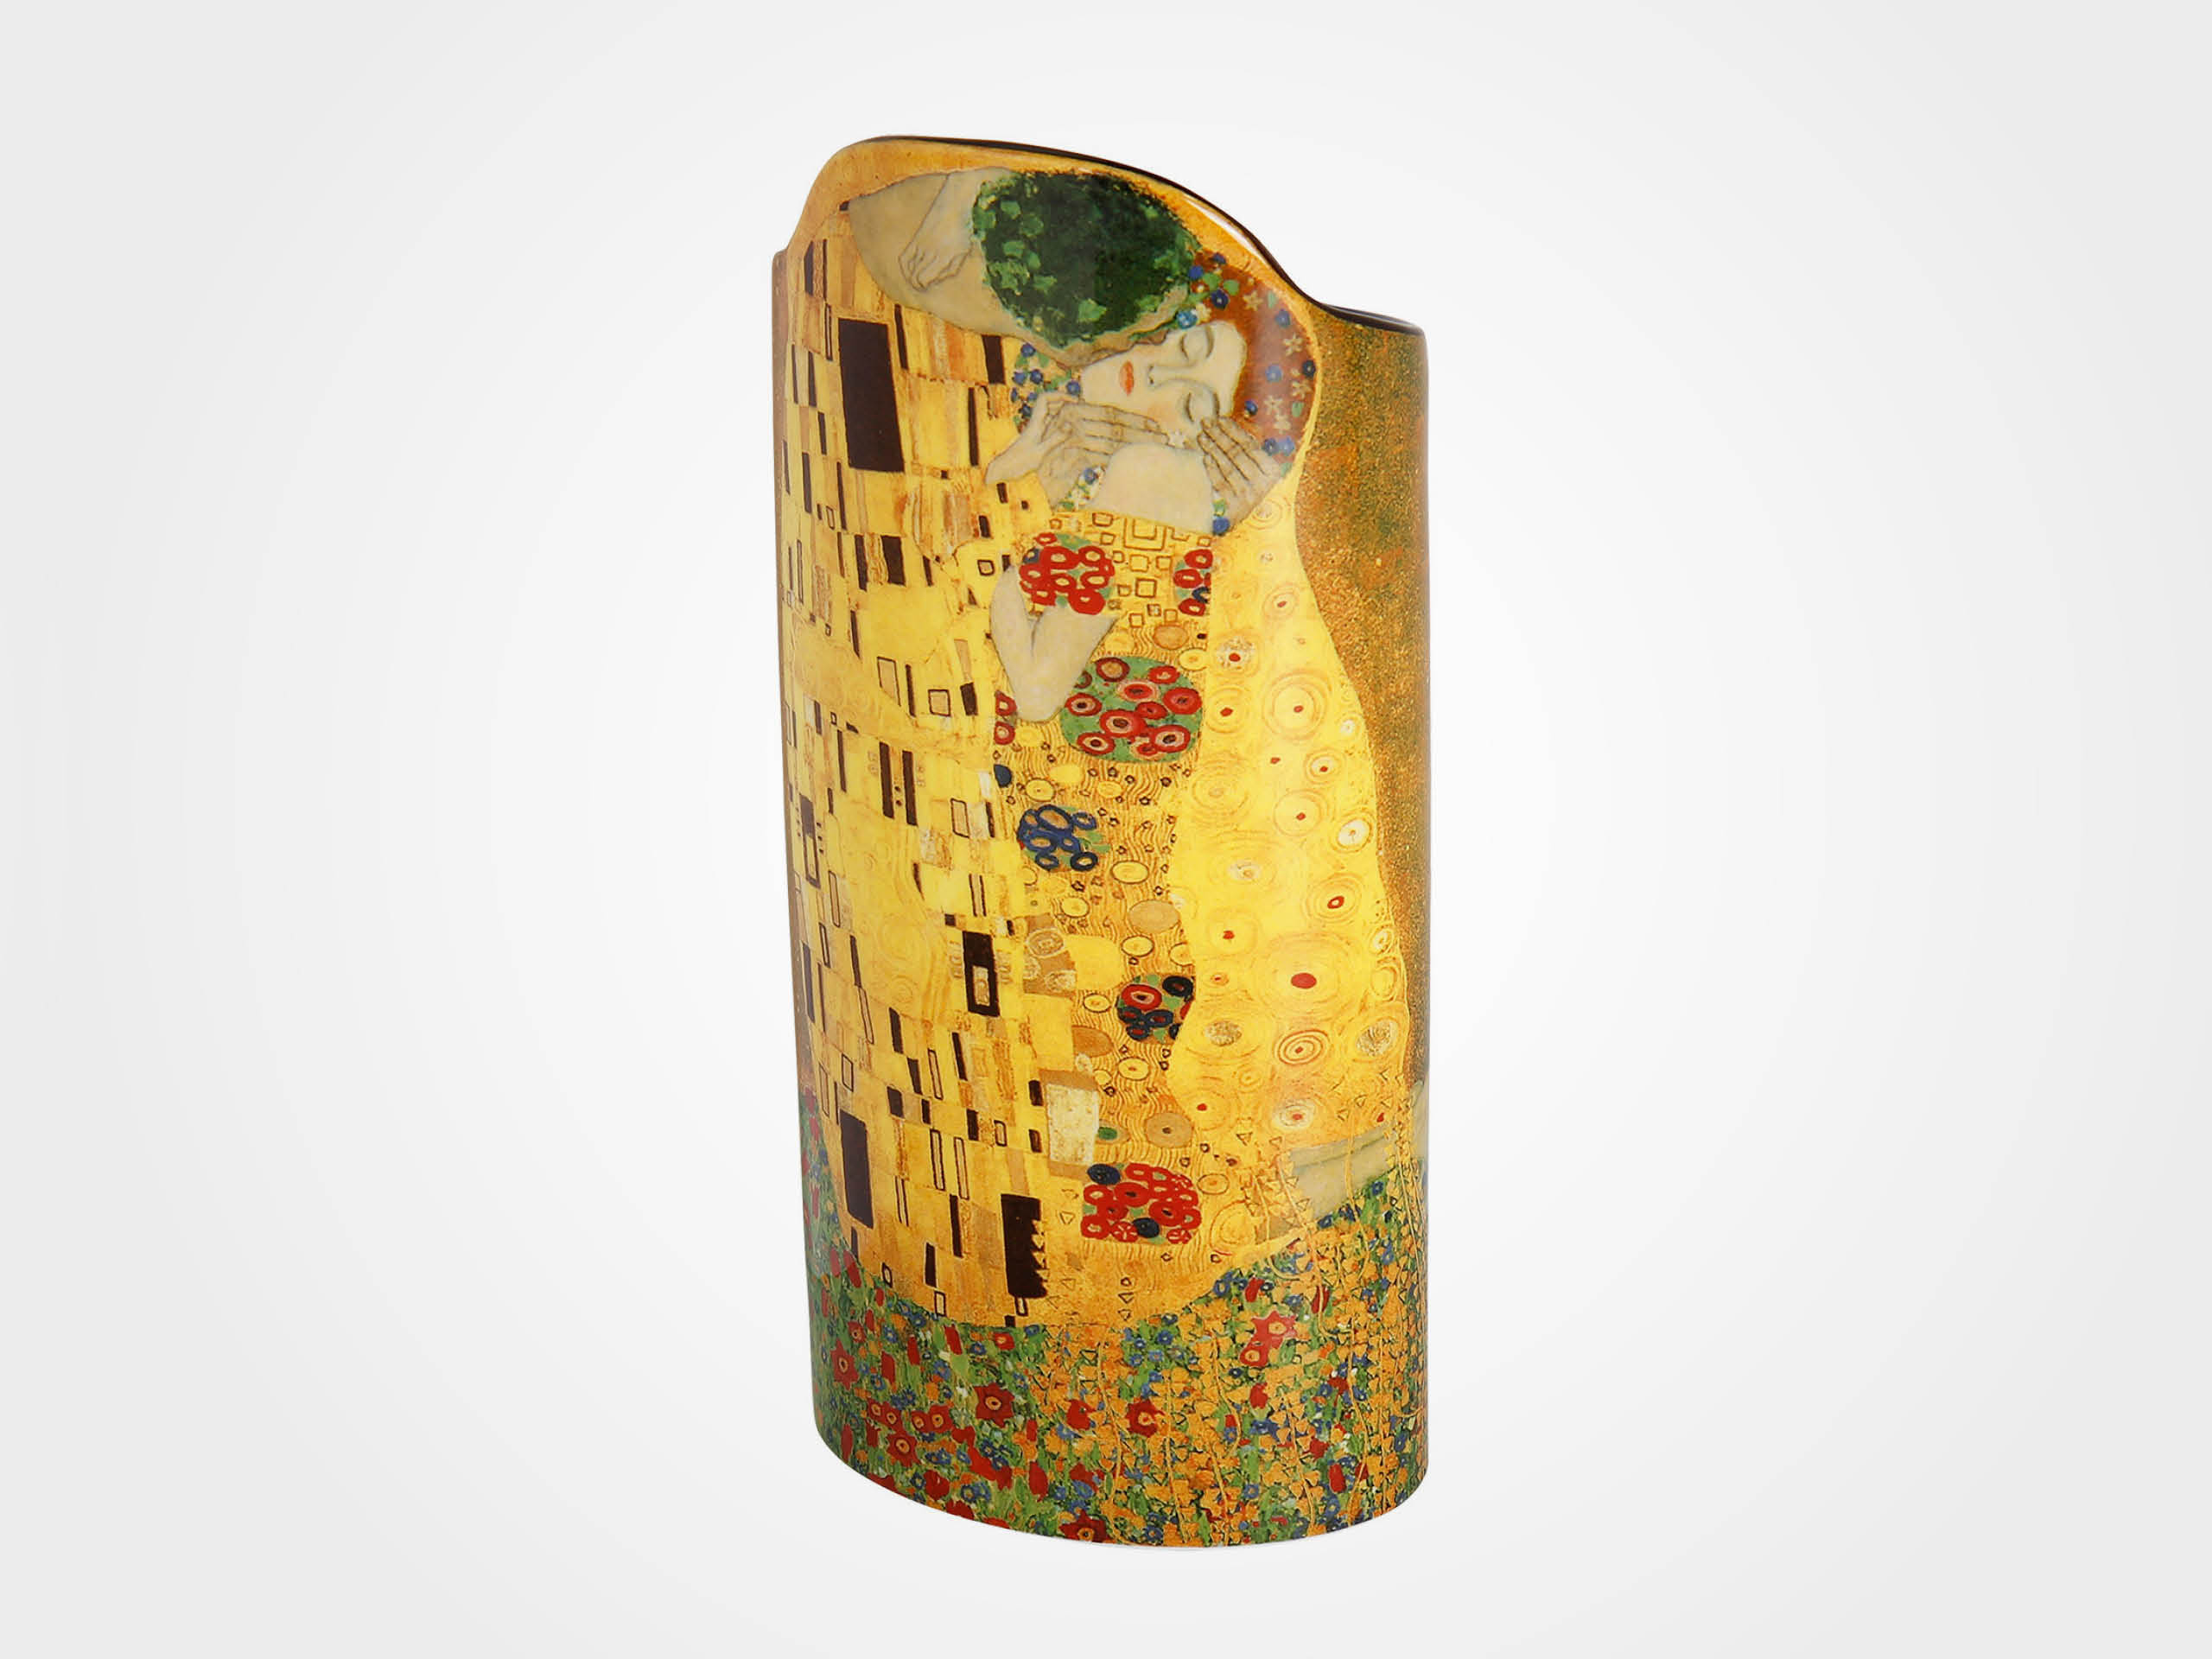 Gustav Klimt: Porzellanvase "Der Kuss"